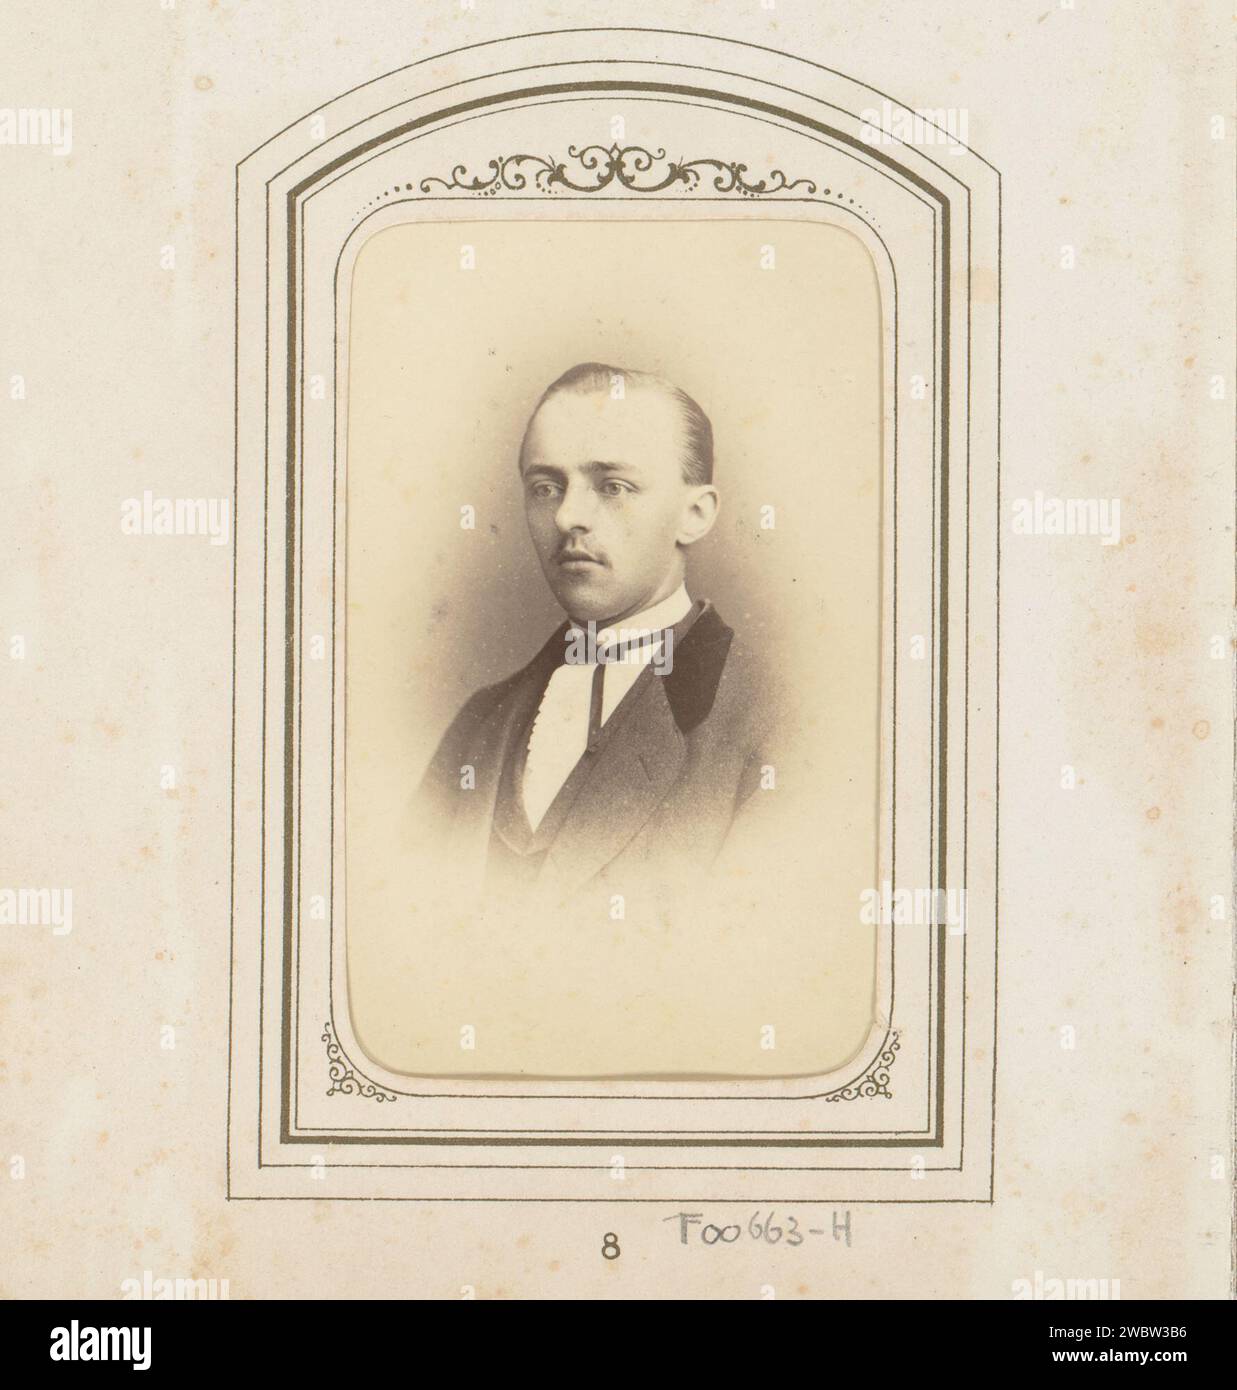 Porträt eines Mannes, F. Springmeier, 1860 - 1880 Fotografie. Visitenkarte dieses Foto ist Teil eines Albums. Unterstützung für Fotos in Amsterdam. Pappalbumen drucken historische Personen Stockfoto